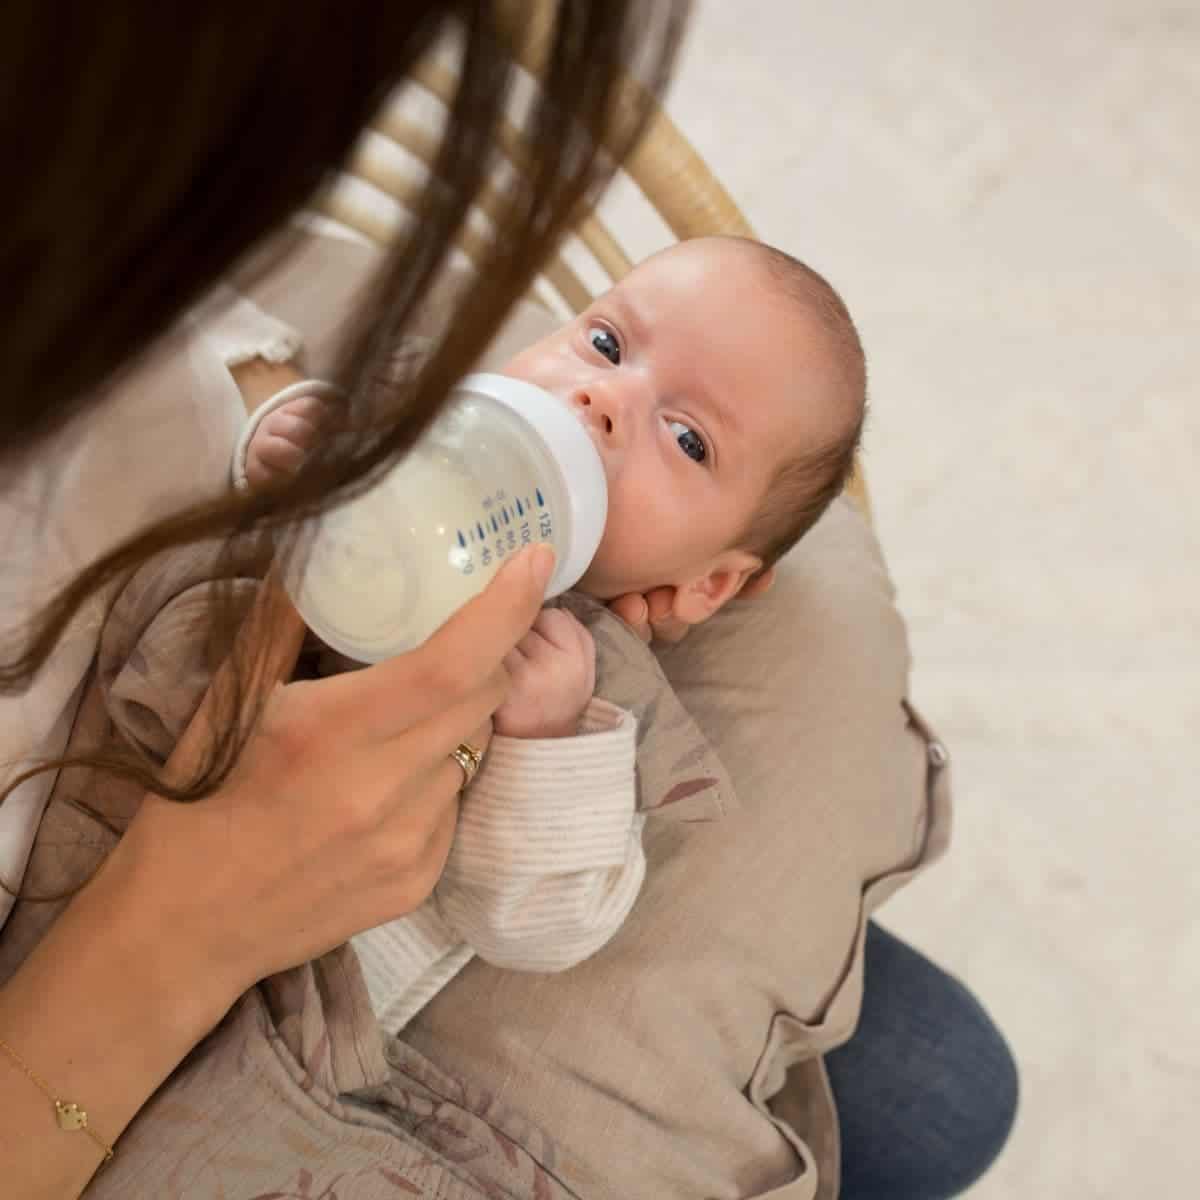 Coussin d'allaitement : Comment le choisir ?